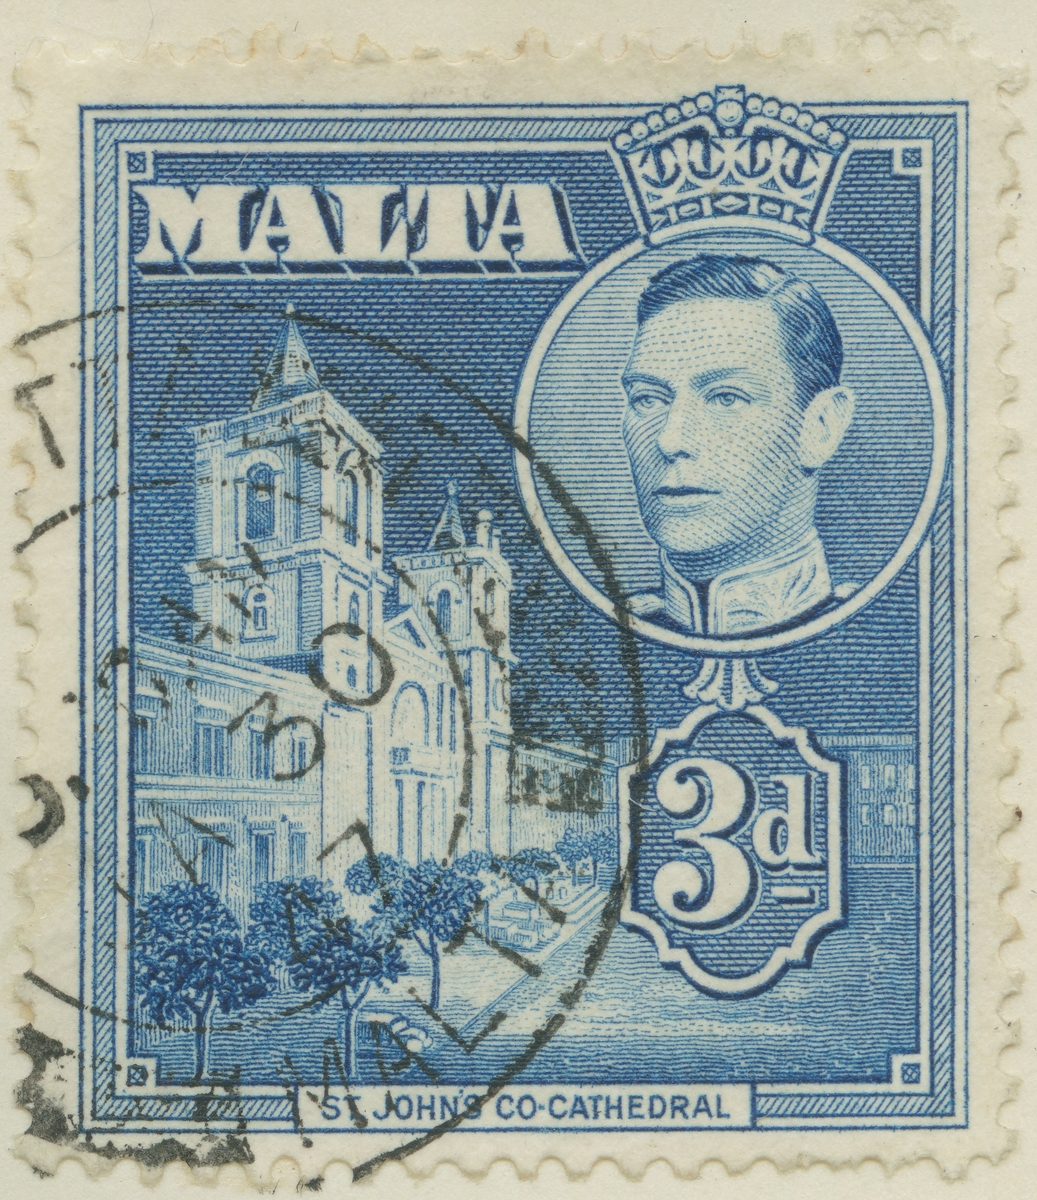 Frimärke ur Gösta Bodmans filatelistiska motivsamling, påbörjad 1950.
Frimärke från Malta, 1938. Motiv av St. Johns Katedralen på Malta. Ovan t.h. Kung George VI.